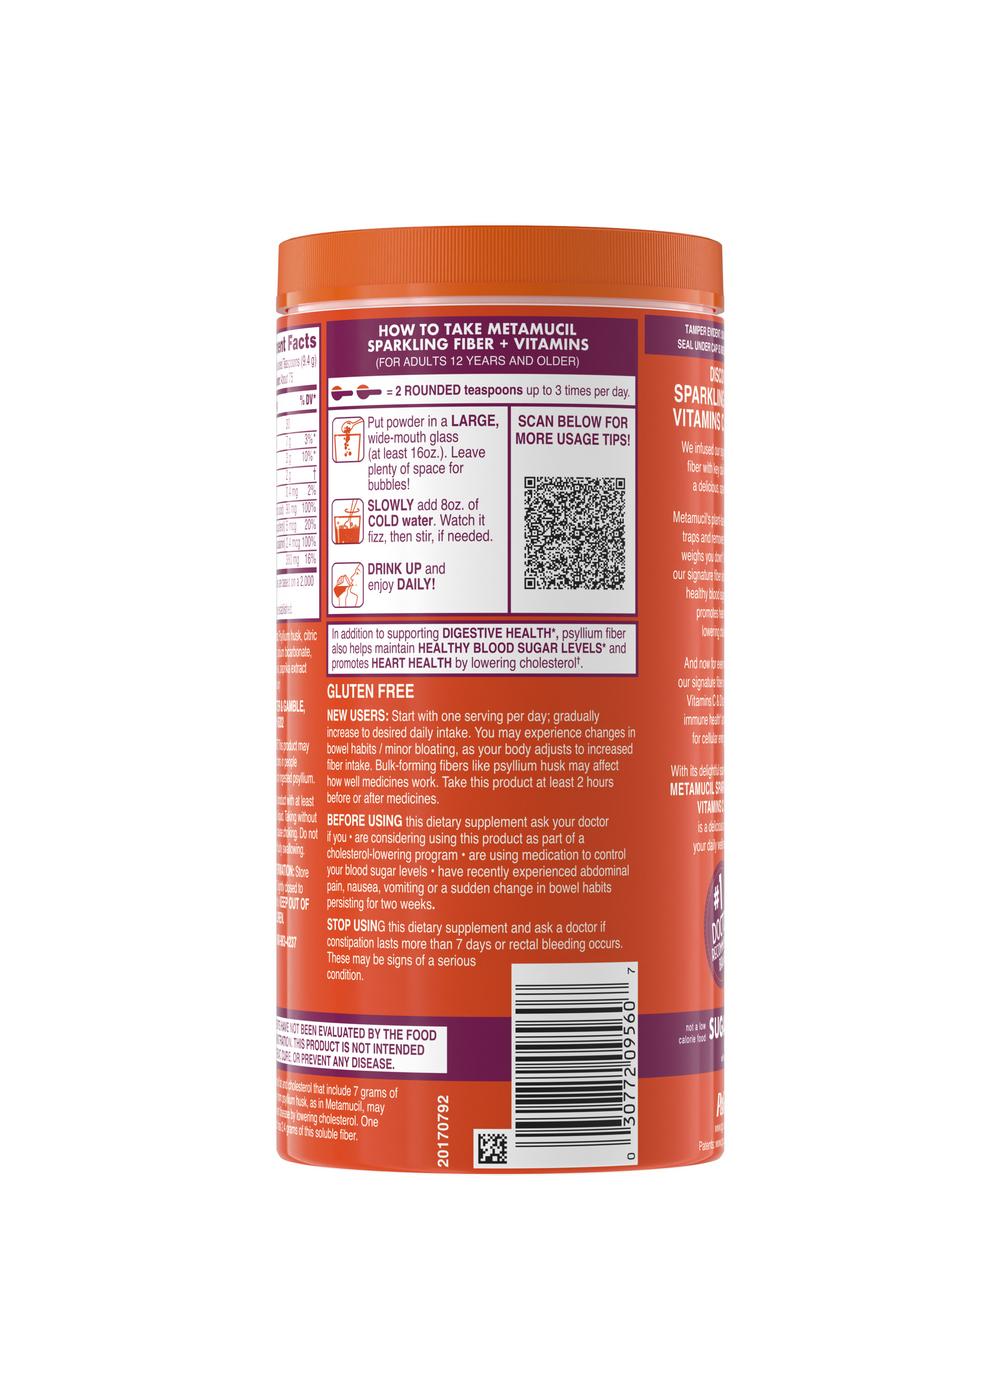 Metamucil Fiber + Vitamins Sparkling Fiber Powder - Citrus; image 3 of 3